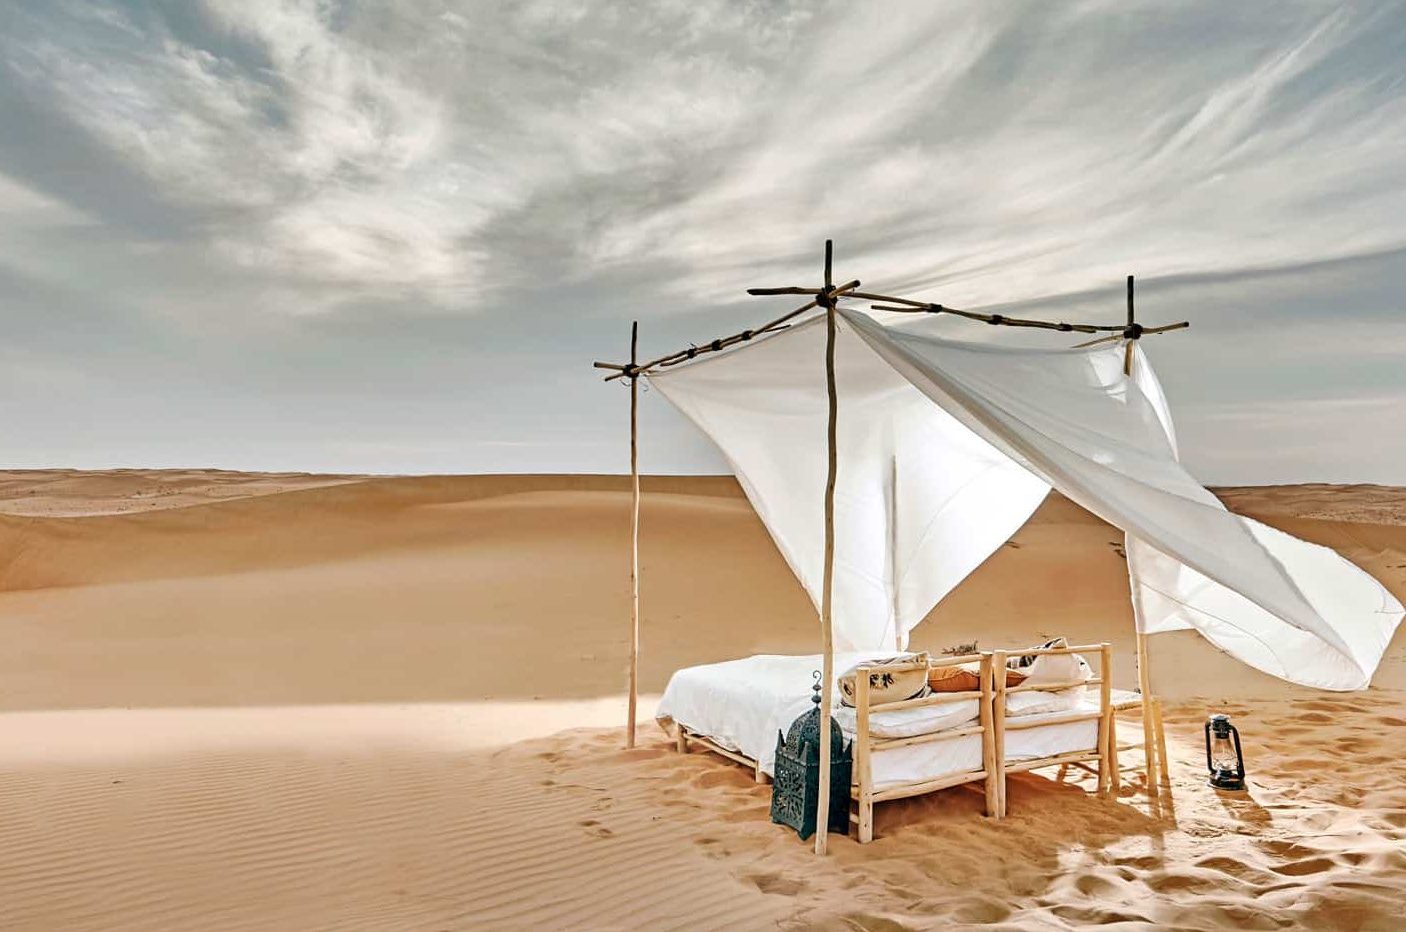 Camp privé désert Oman lit désert